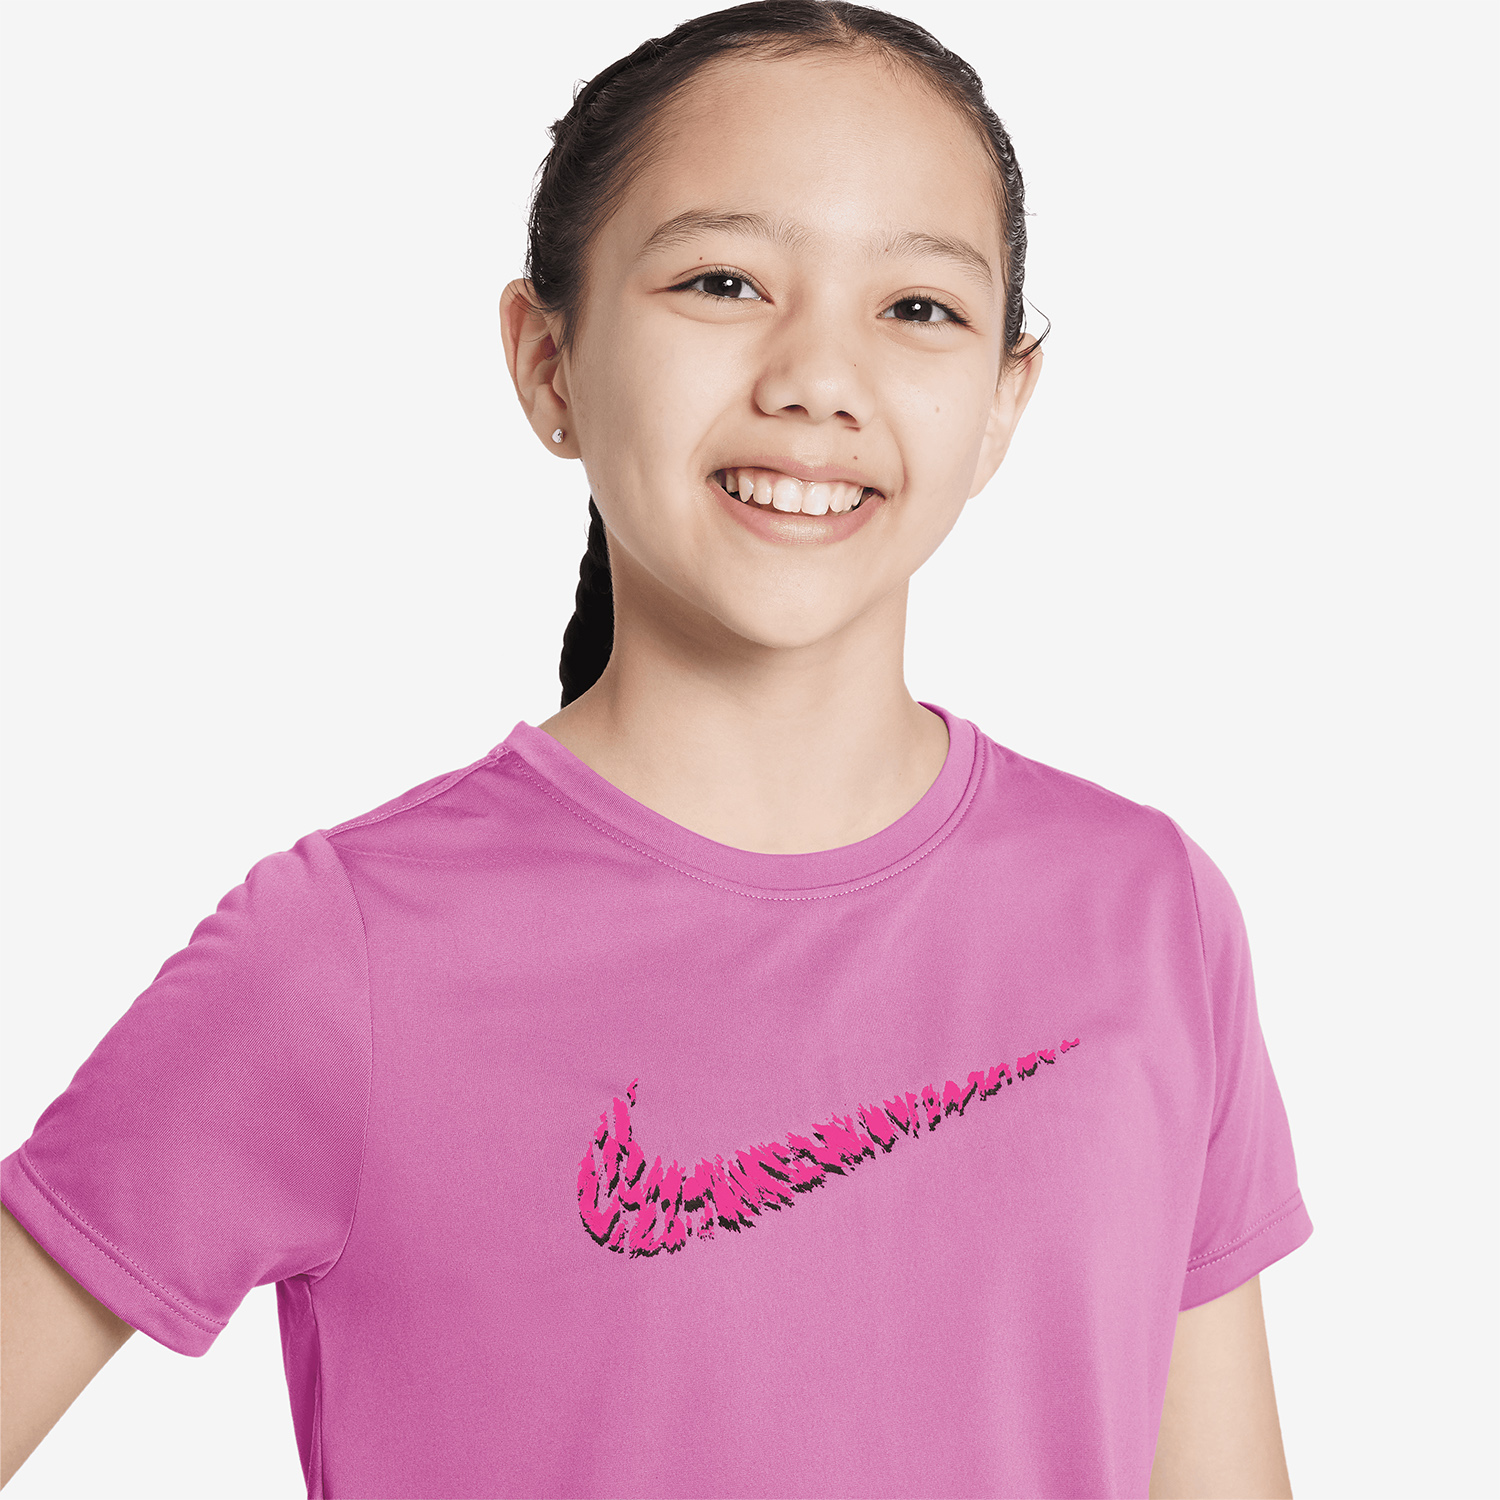 Nike One Maglietta Bambina - Playful Pink